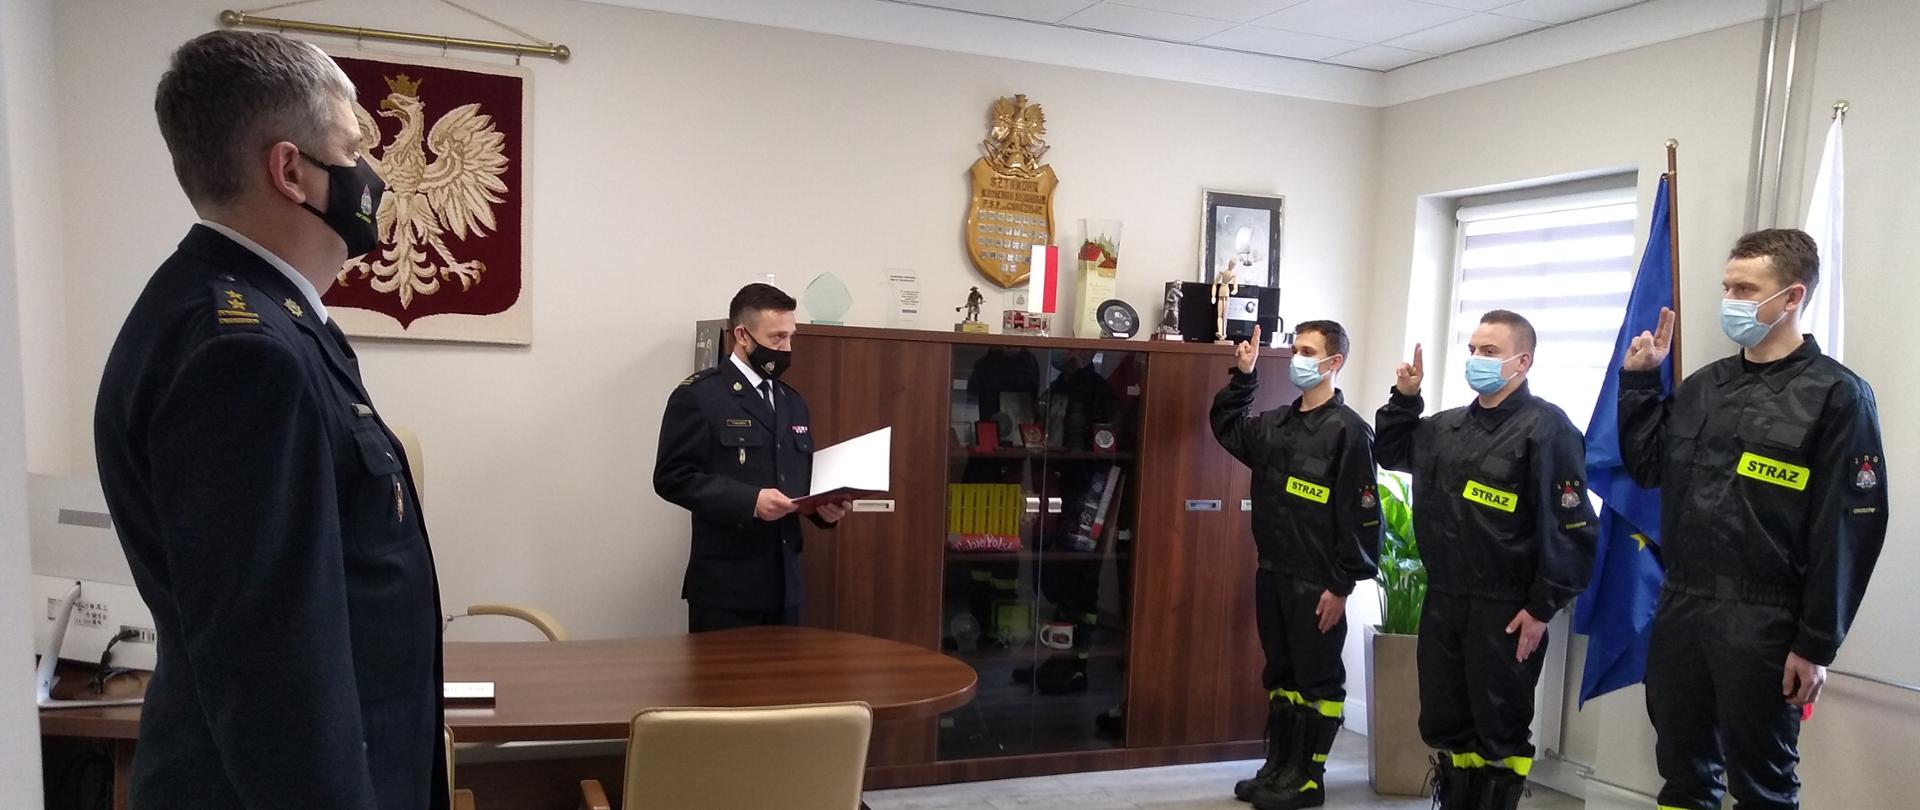 Zdjęcie przedstawia Komendanta Miejskiego Państwowej Straży Pożarnej w Chorzowie odbierającego ślubowanie od nowoprzyjętych funkcjonariuszy